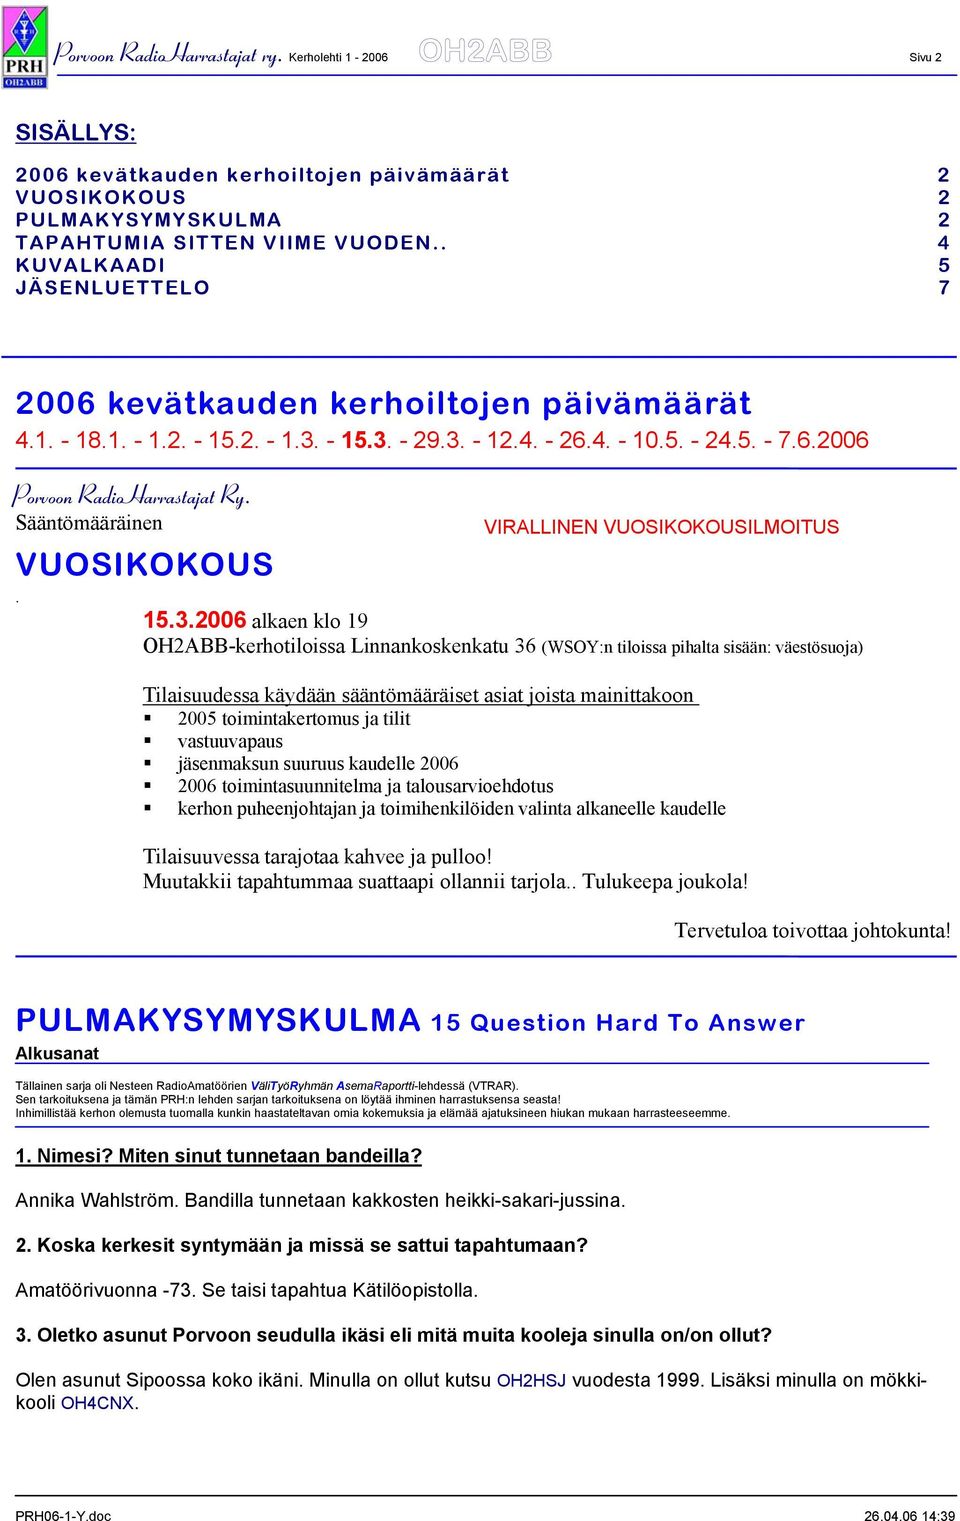 Sääntömääräinen VUOSIKOKOUS. VIRALLINEN VUOSIKOKOUSILMOITUS 15.3.